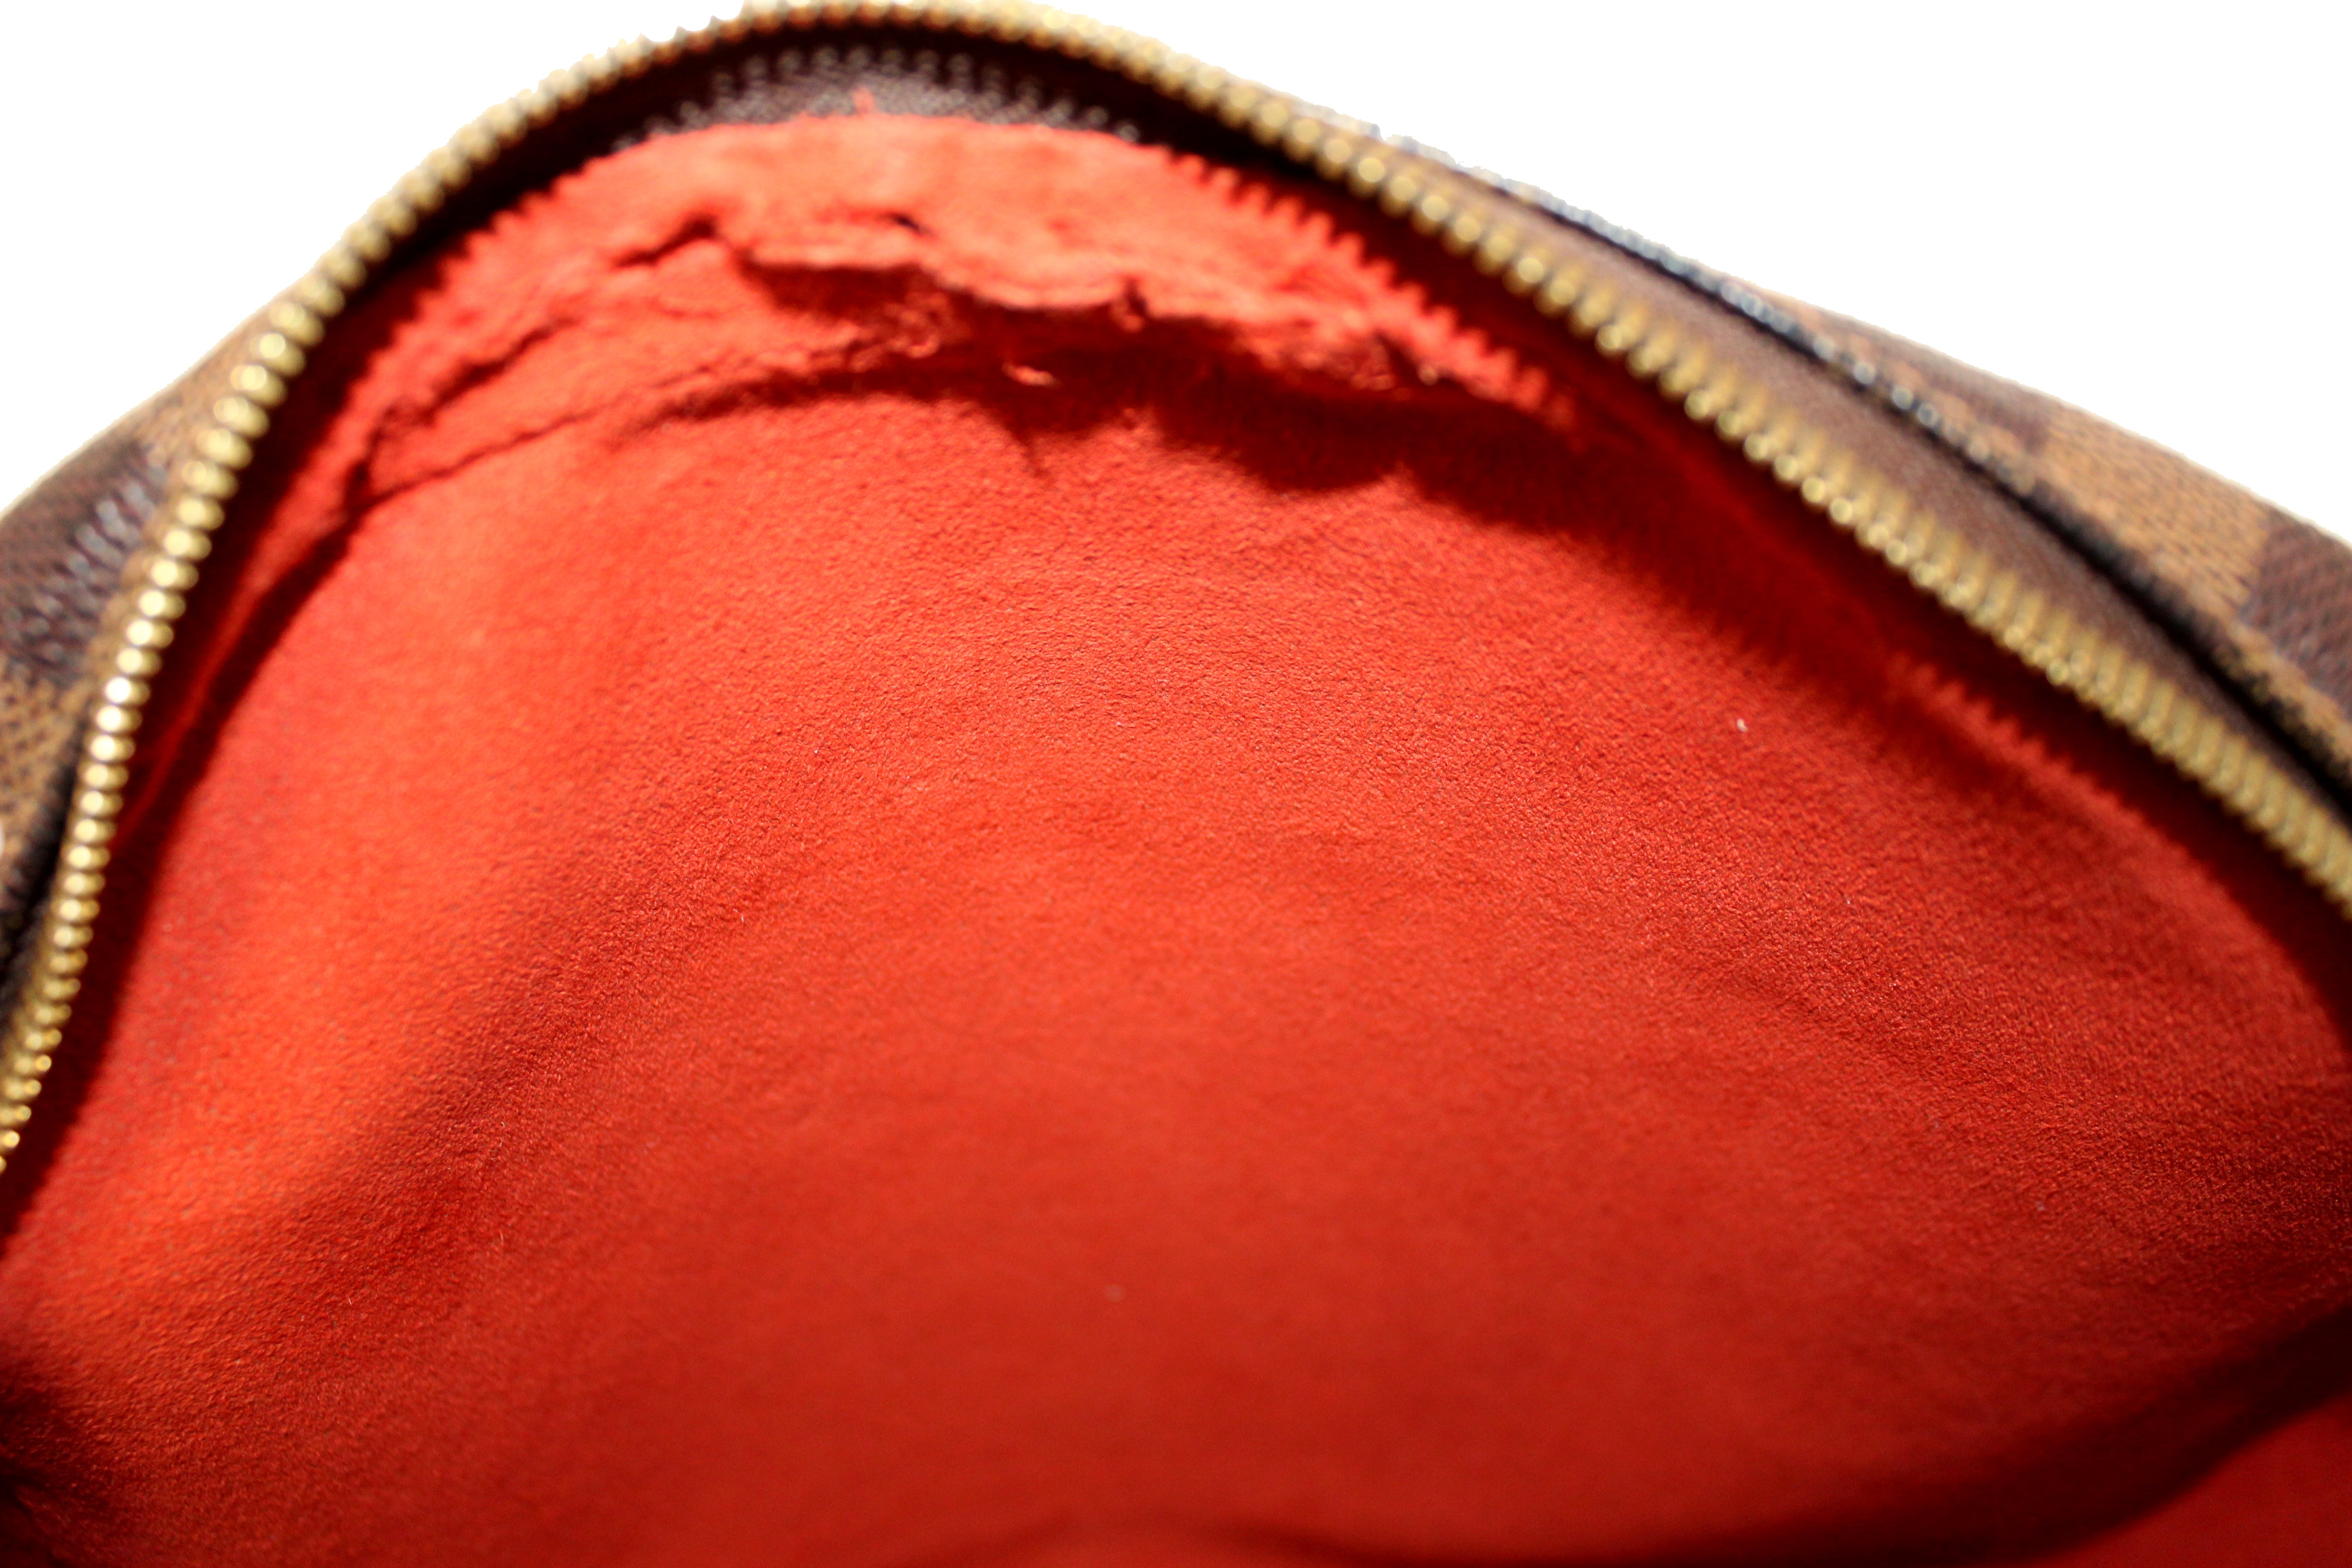 Louis Vuitton Ipanema GM Damier Ebene Canvas Shoulder Bag